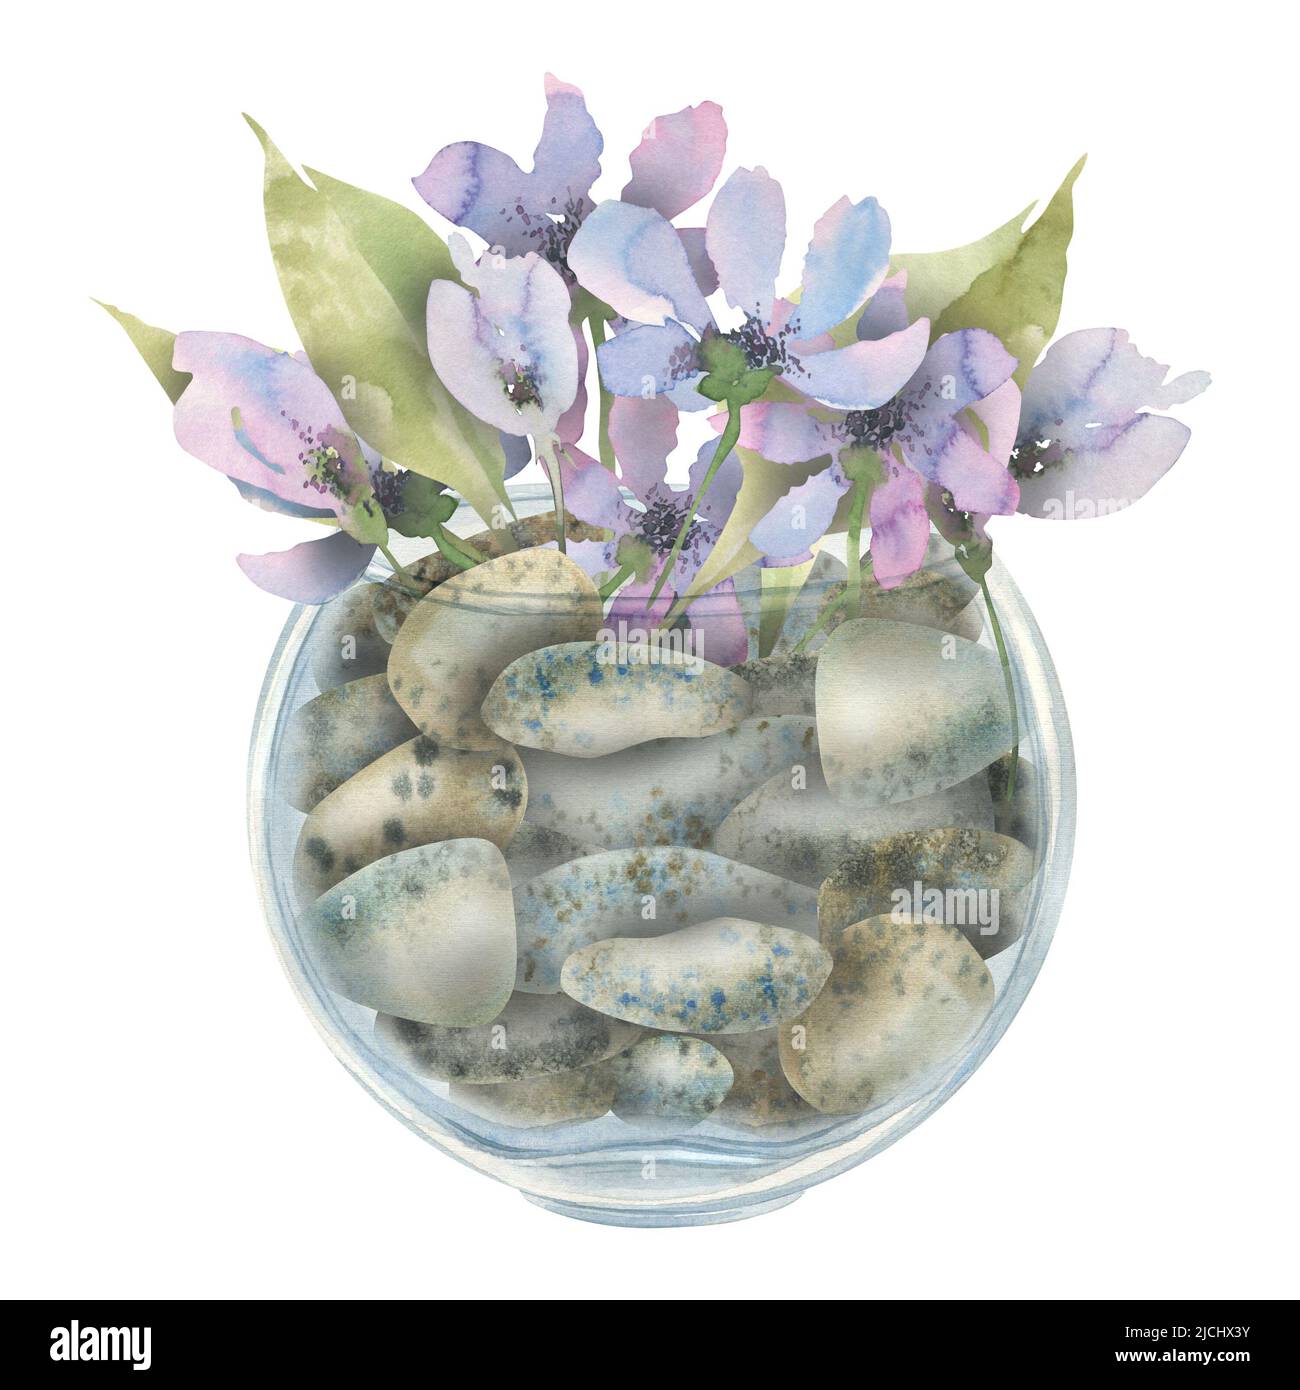 Fleurs délicates et violettes abstraites dans un pot en verre rempli de galets. Illustration aquarelle. Composition pour la décoration et le design intérieur, pos Banque D'Images